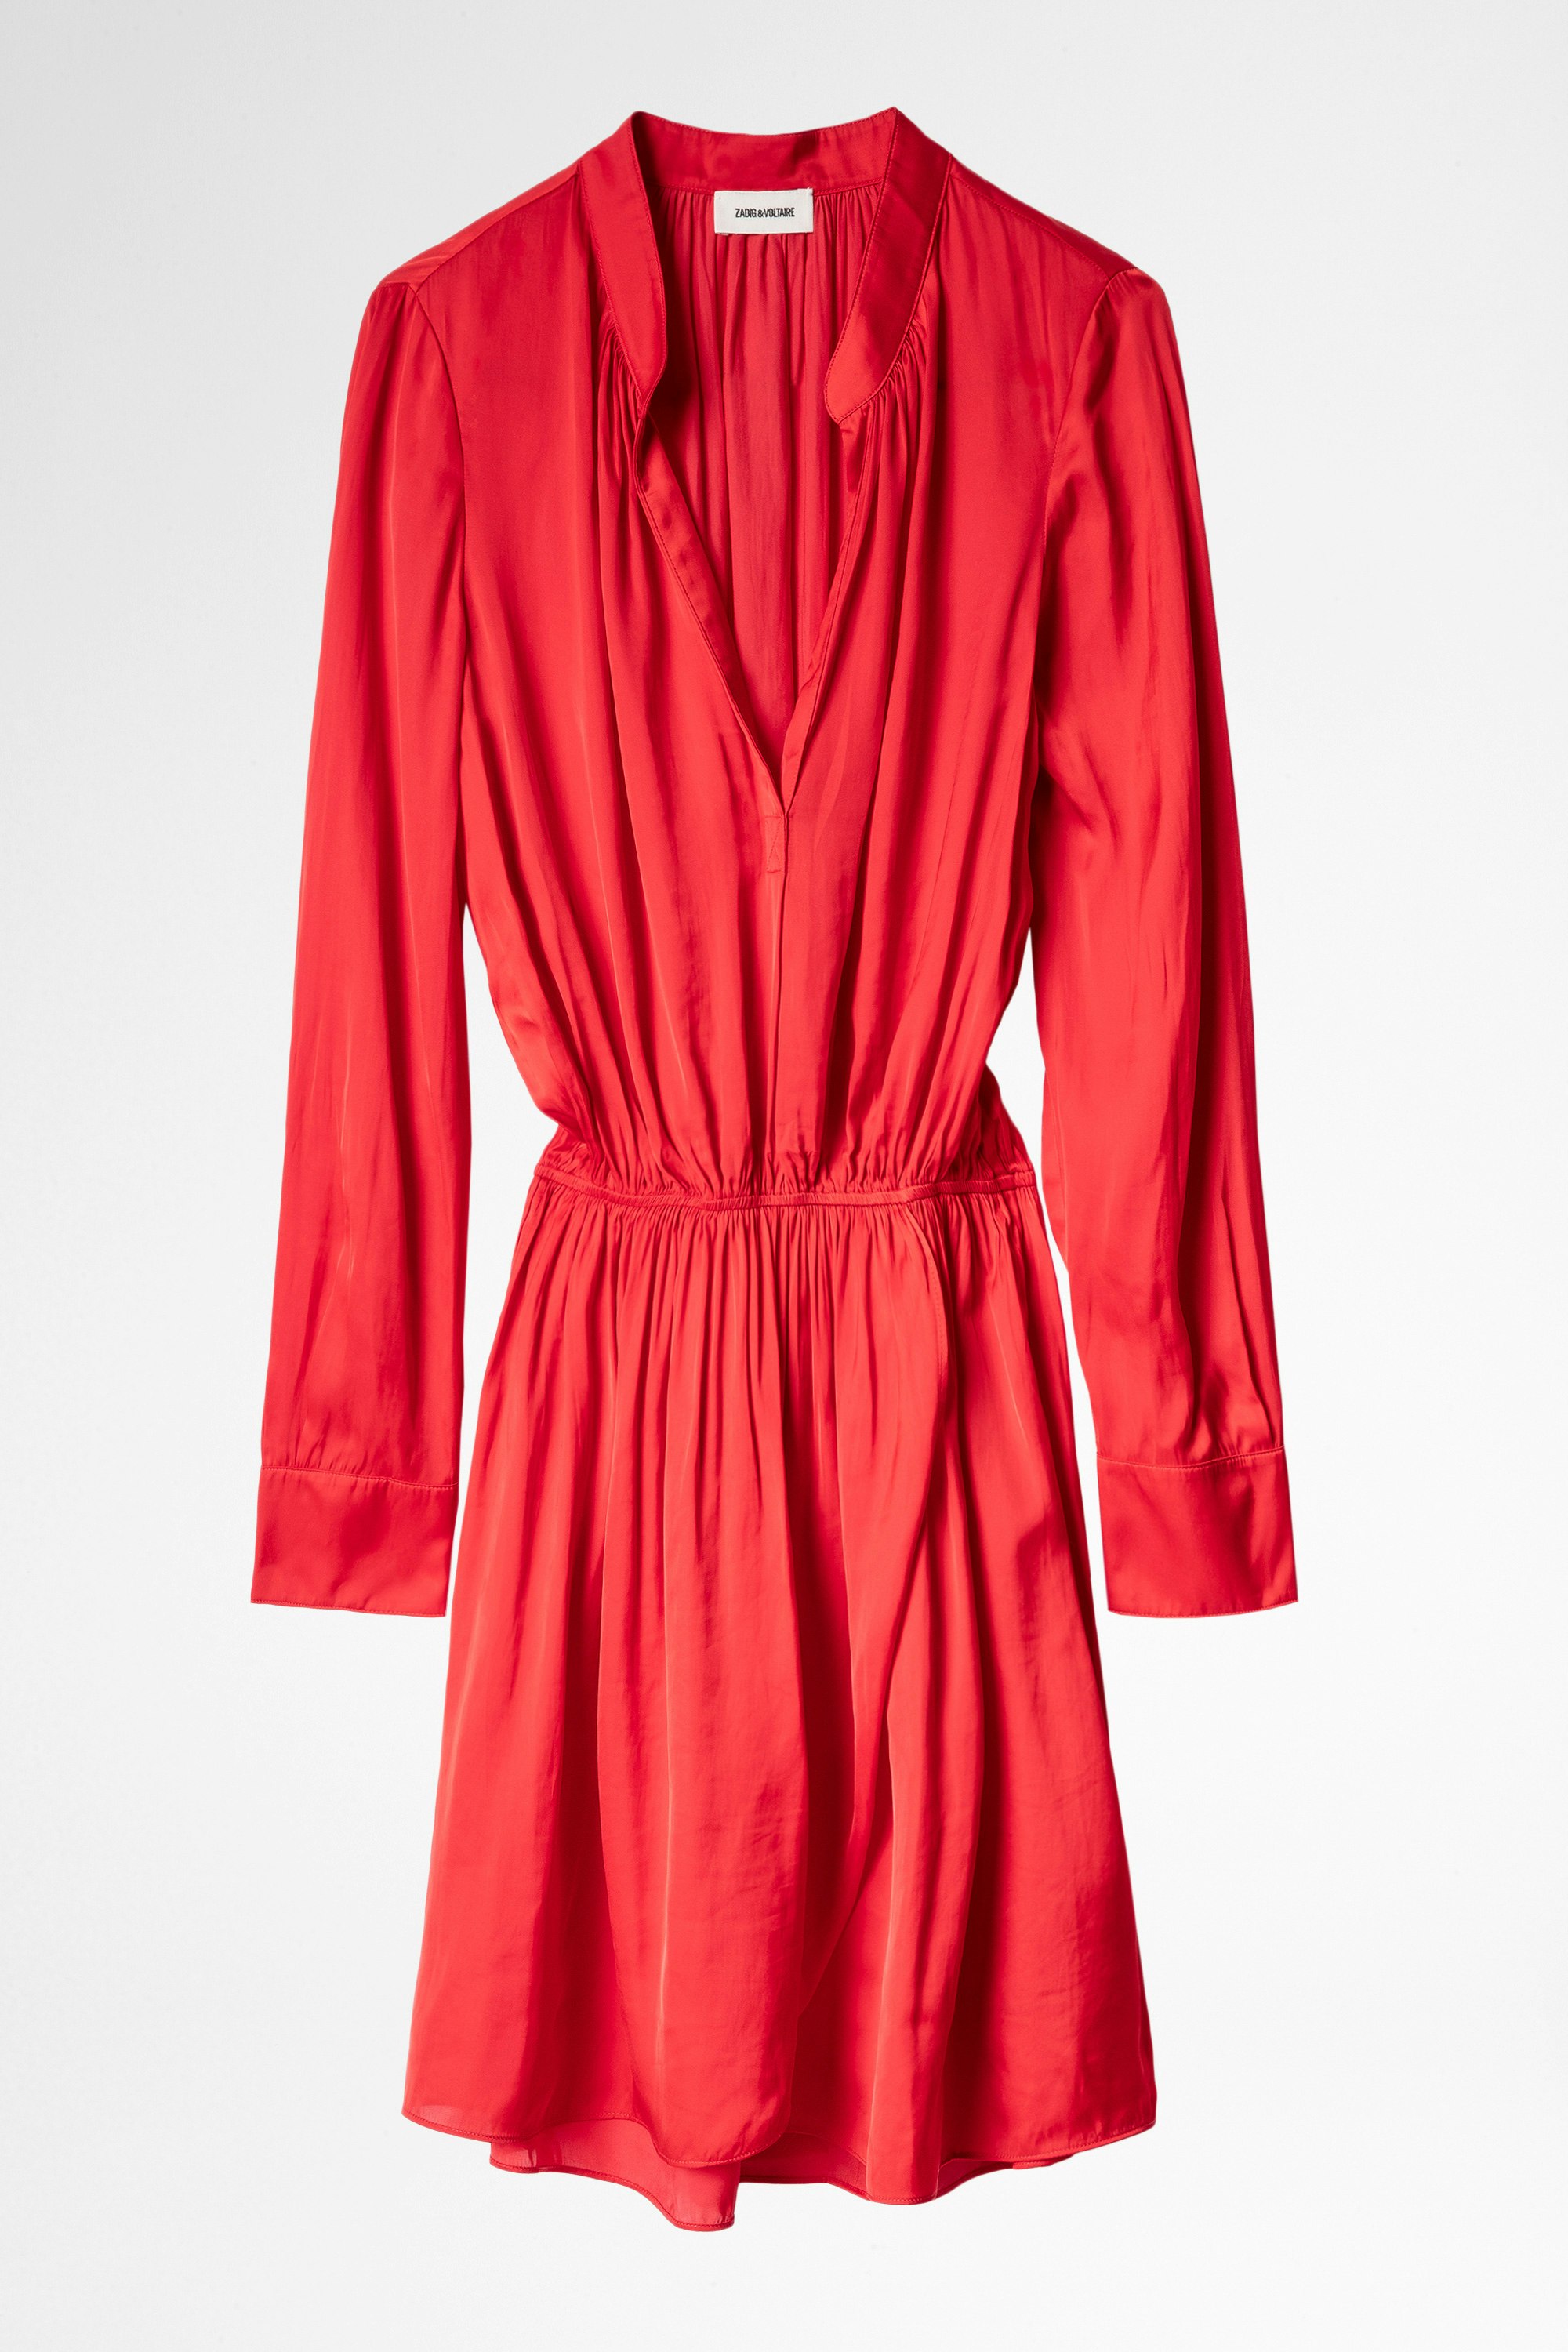 Rinka Satin Dress Women’s red long-sleeved mini dress